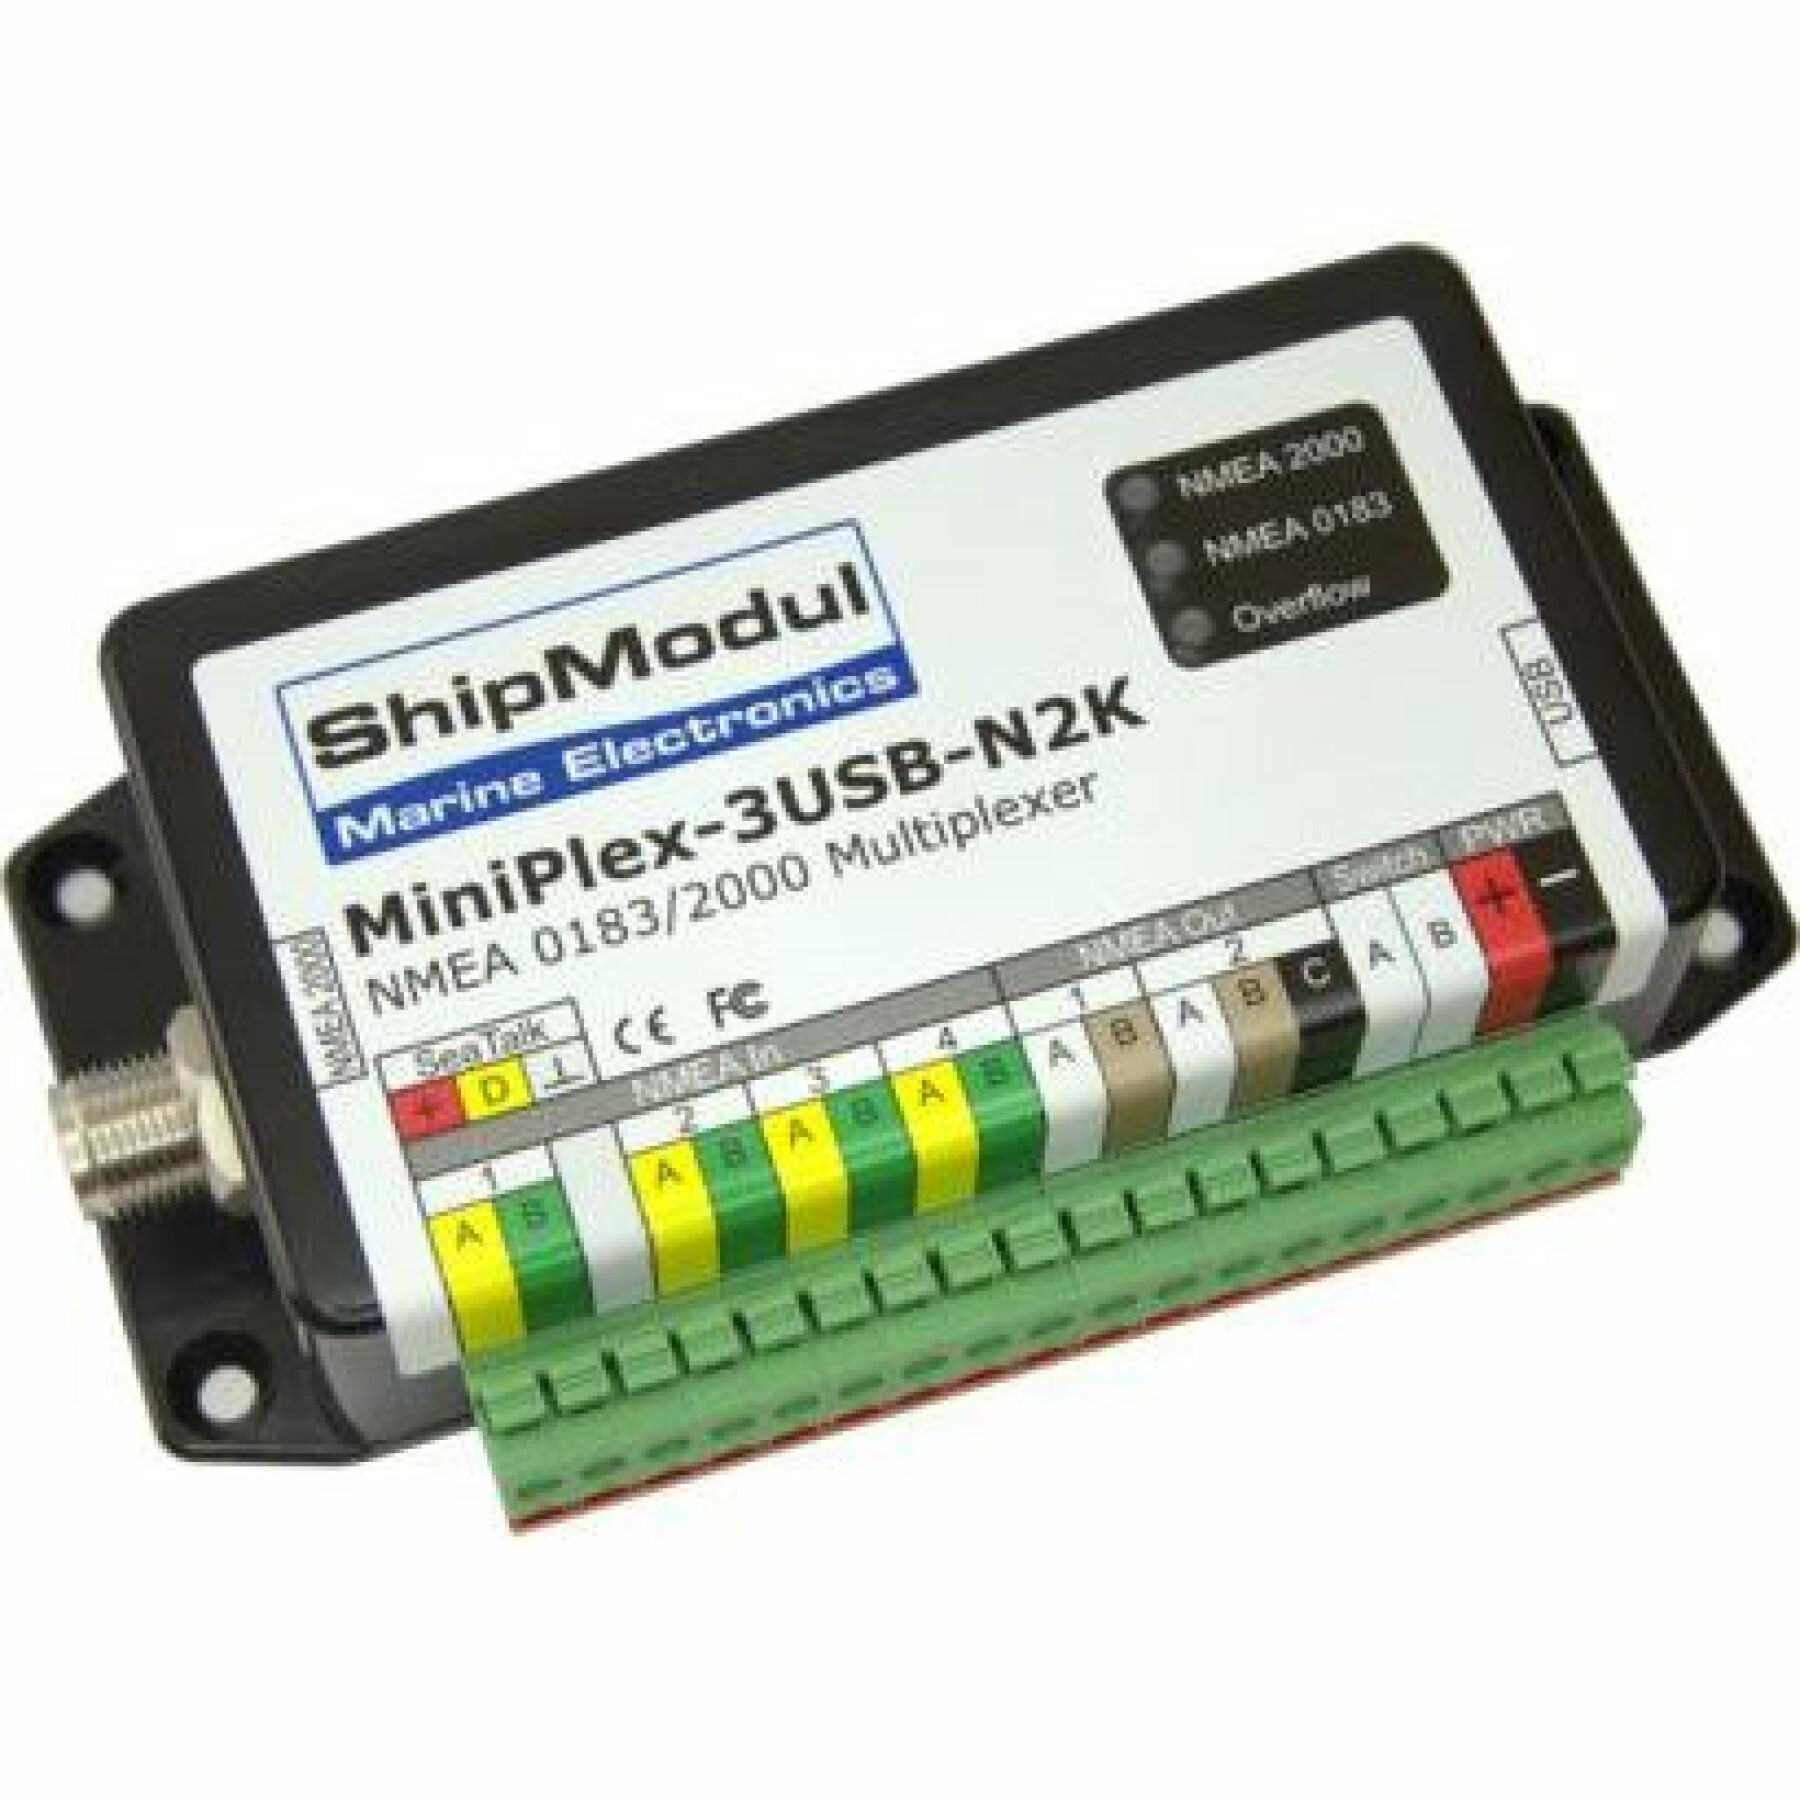 Multiplekser usb wersja ShipModul Miniplex-3USB-N2K